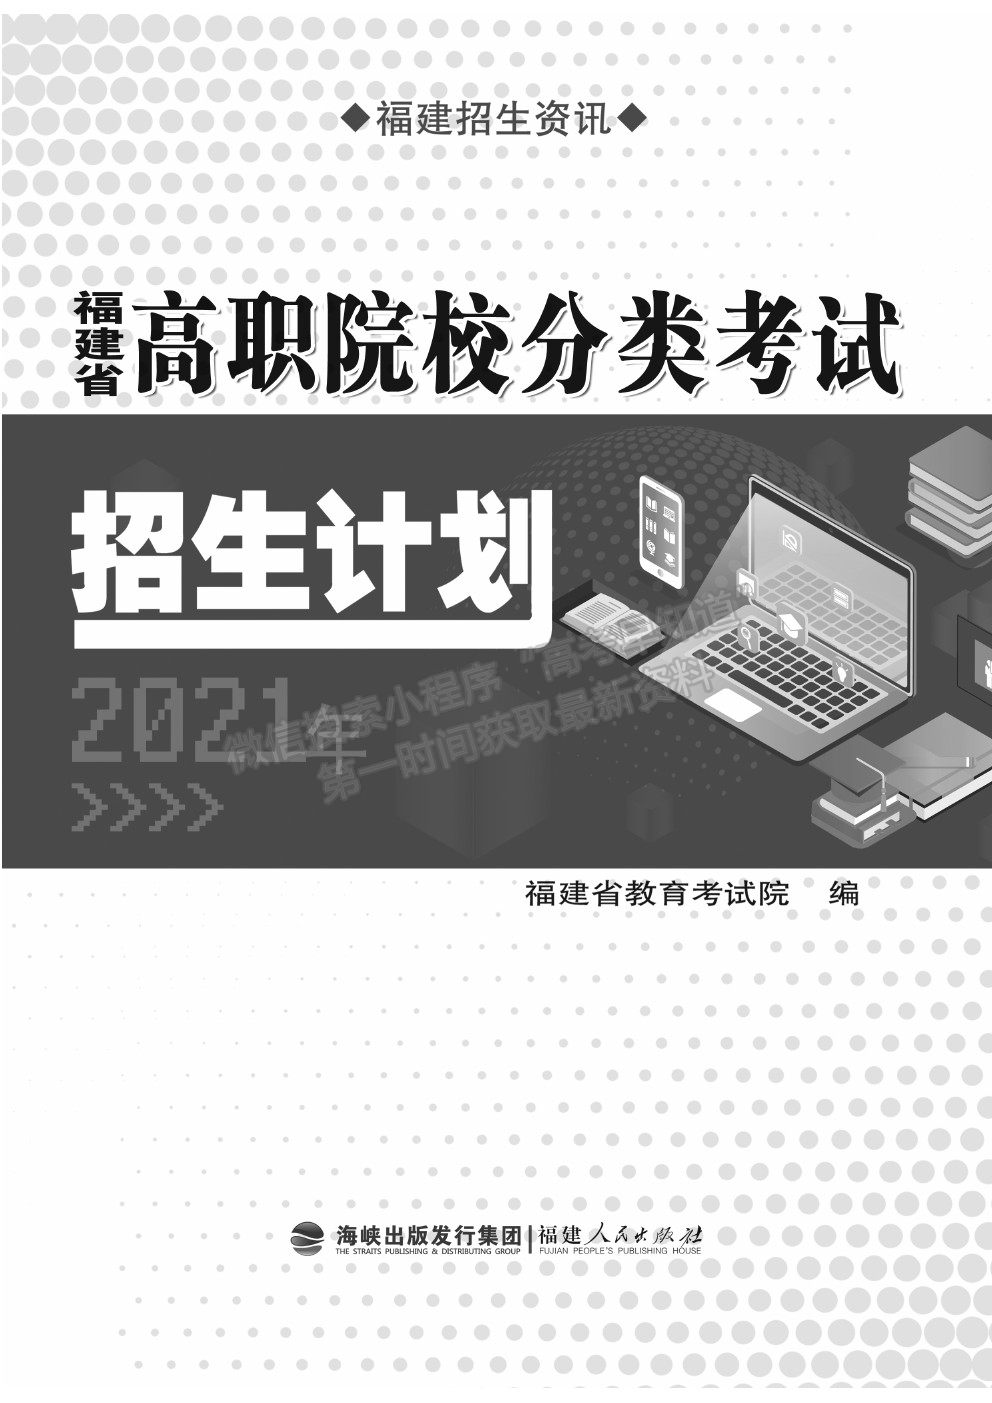 福建省2021年高职院校分类考试招生计划公布